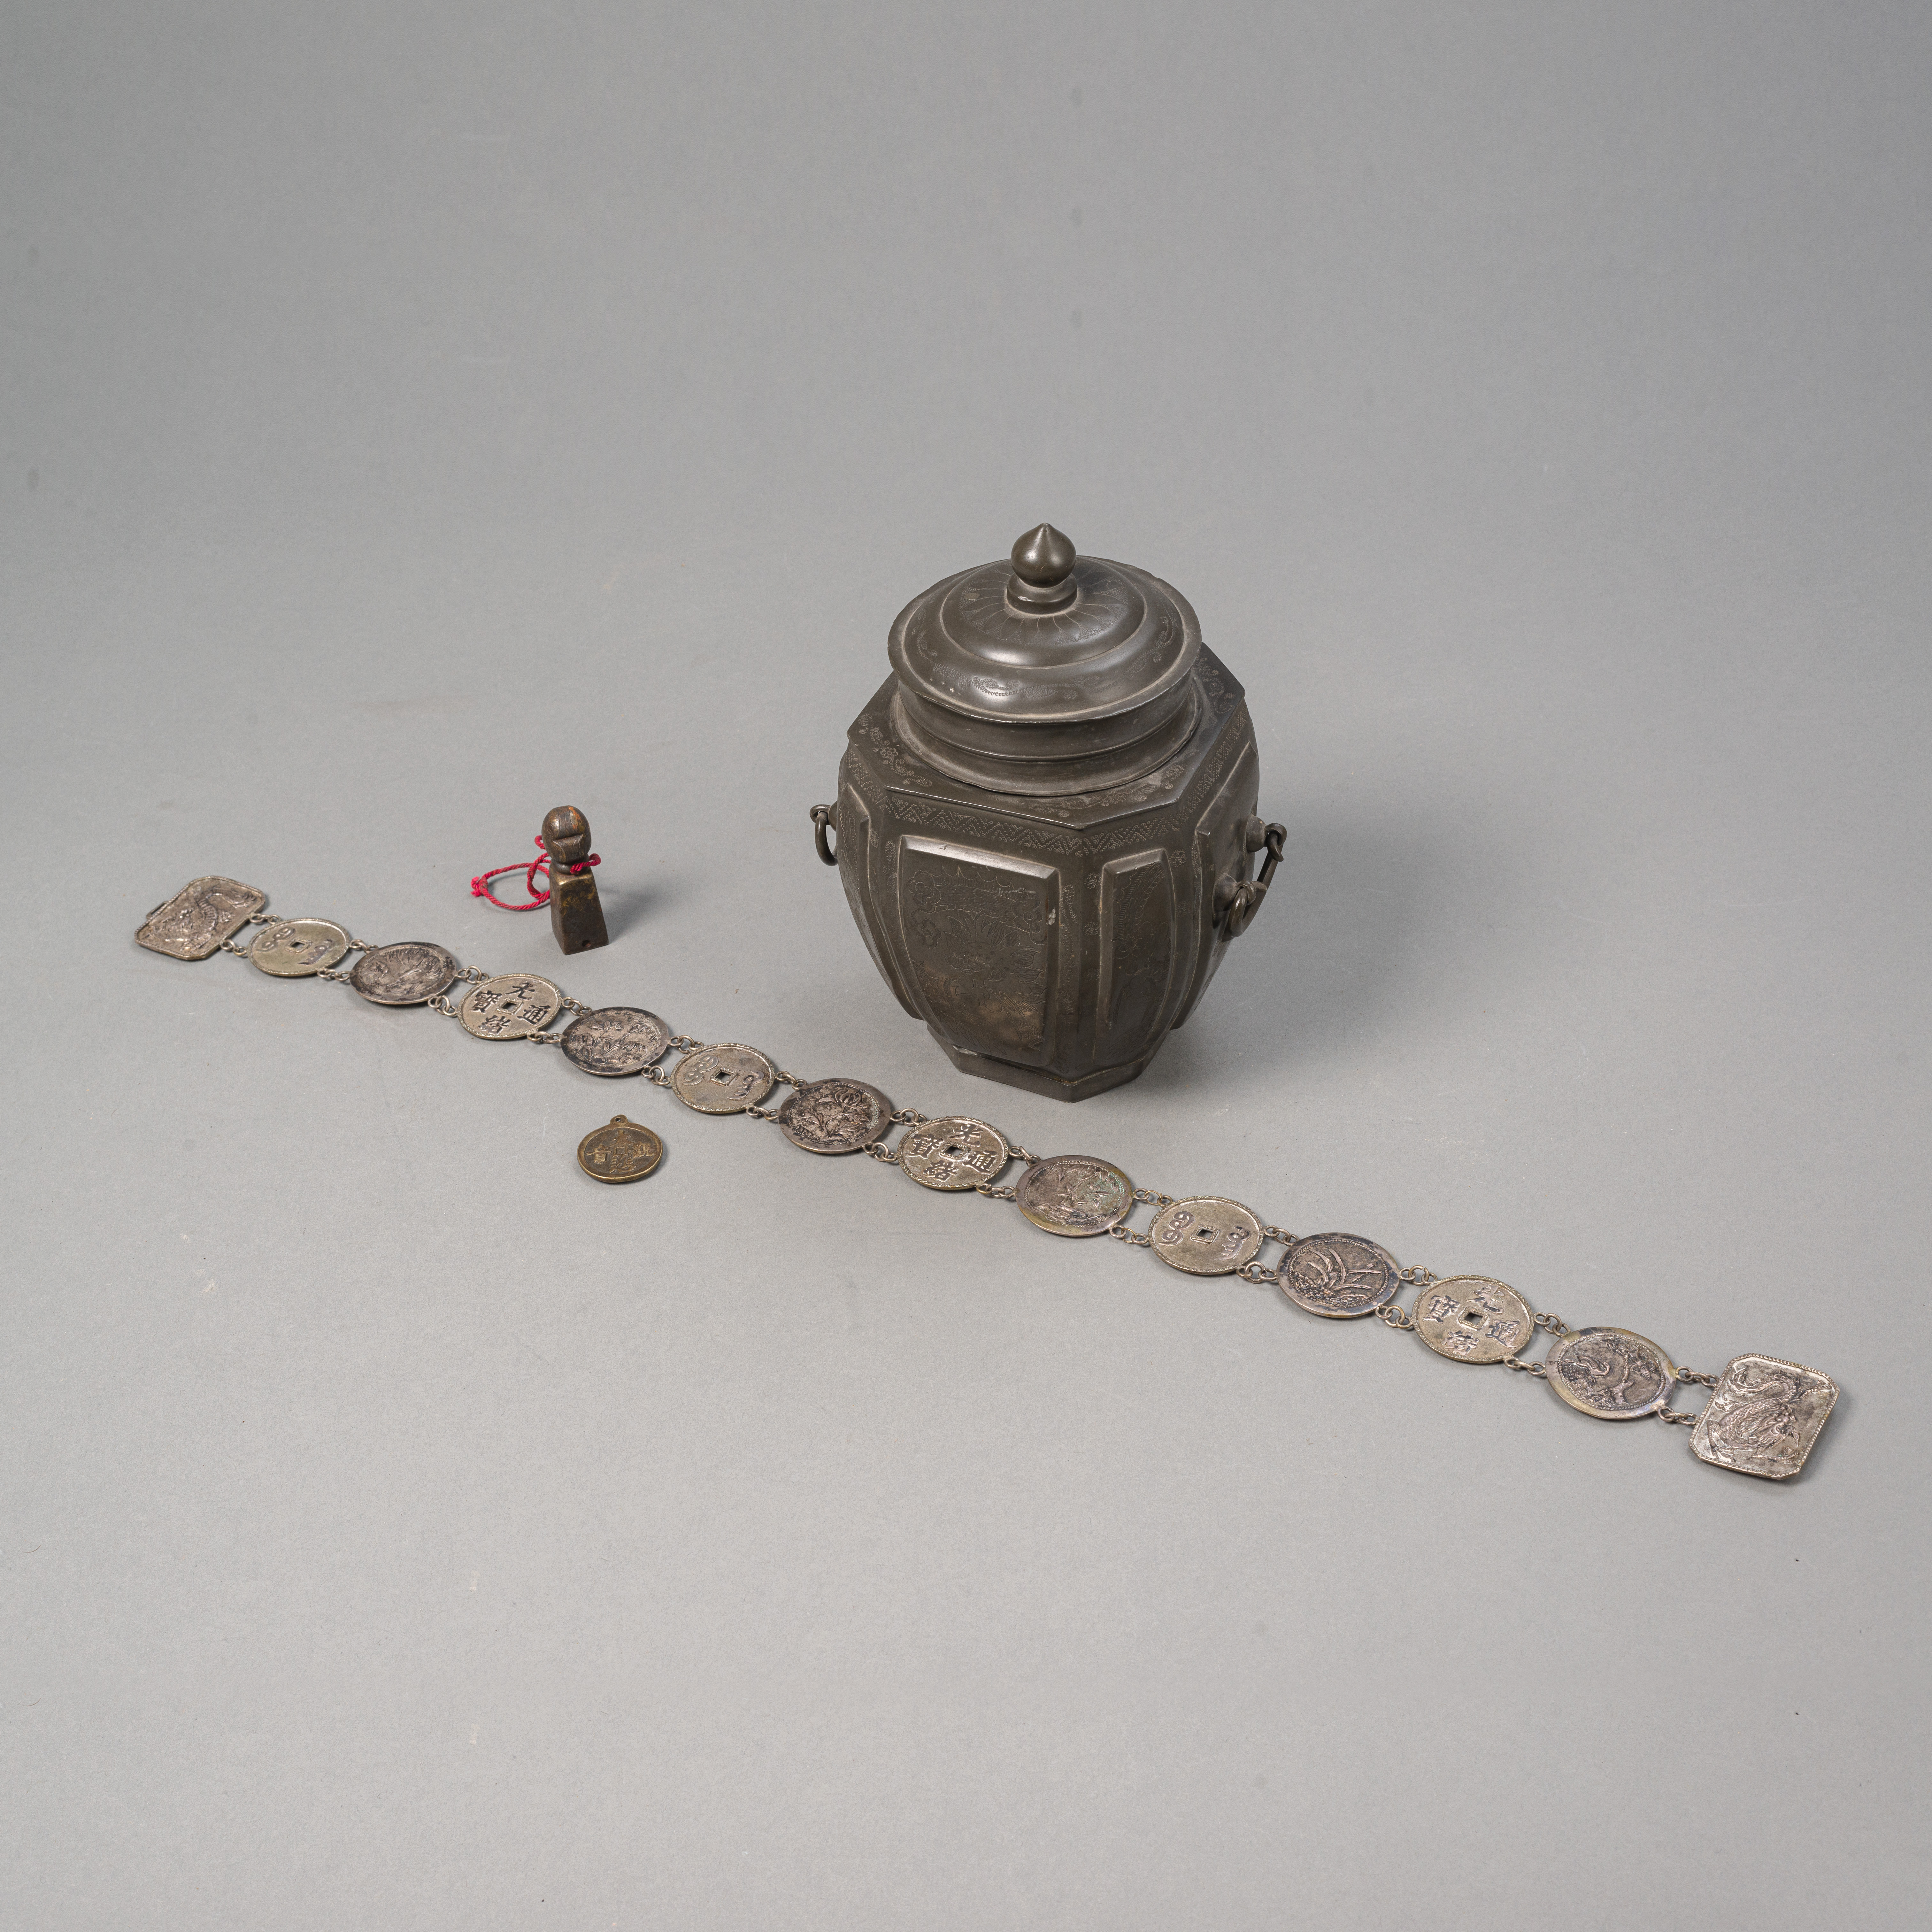 Zinn-Deckeldose, Münzen-Silberblechgürtel, Medaillon-Anhänger und Siegel